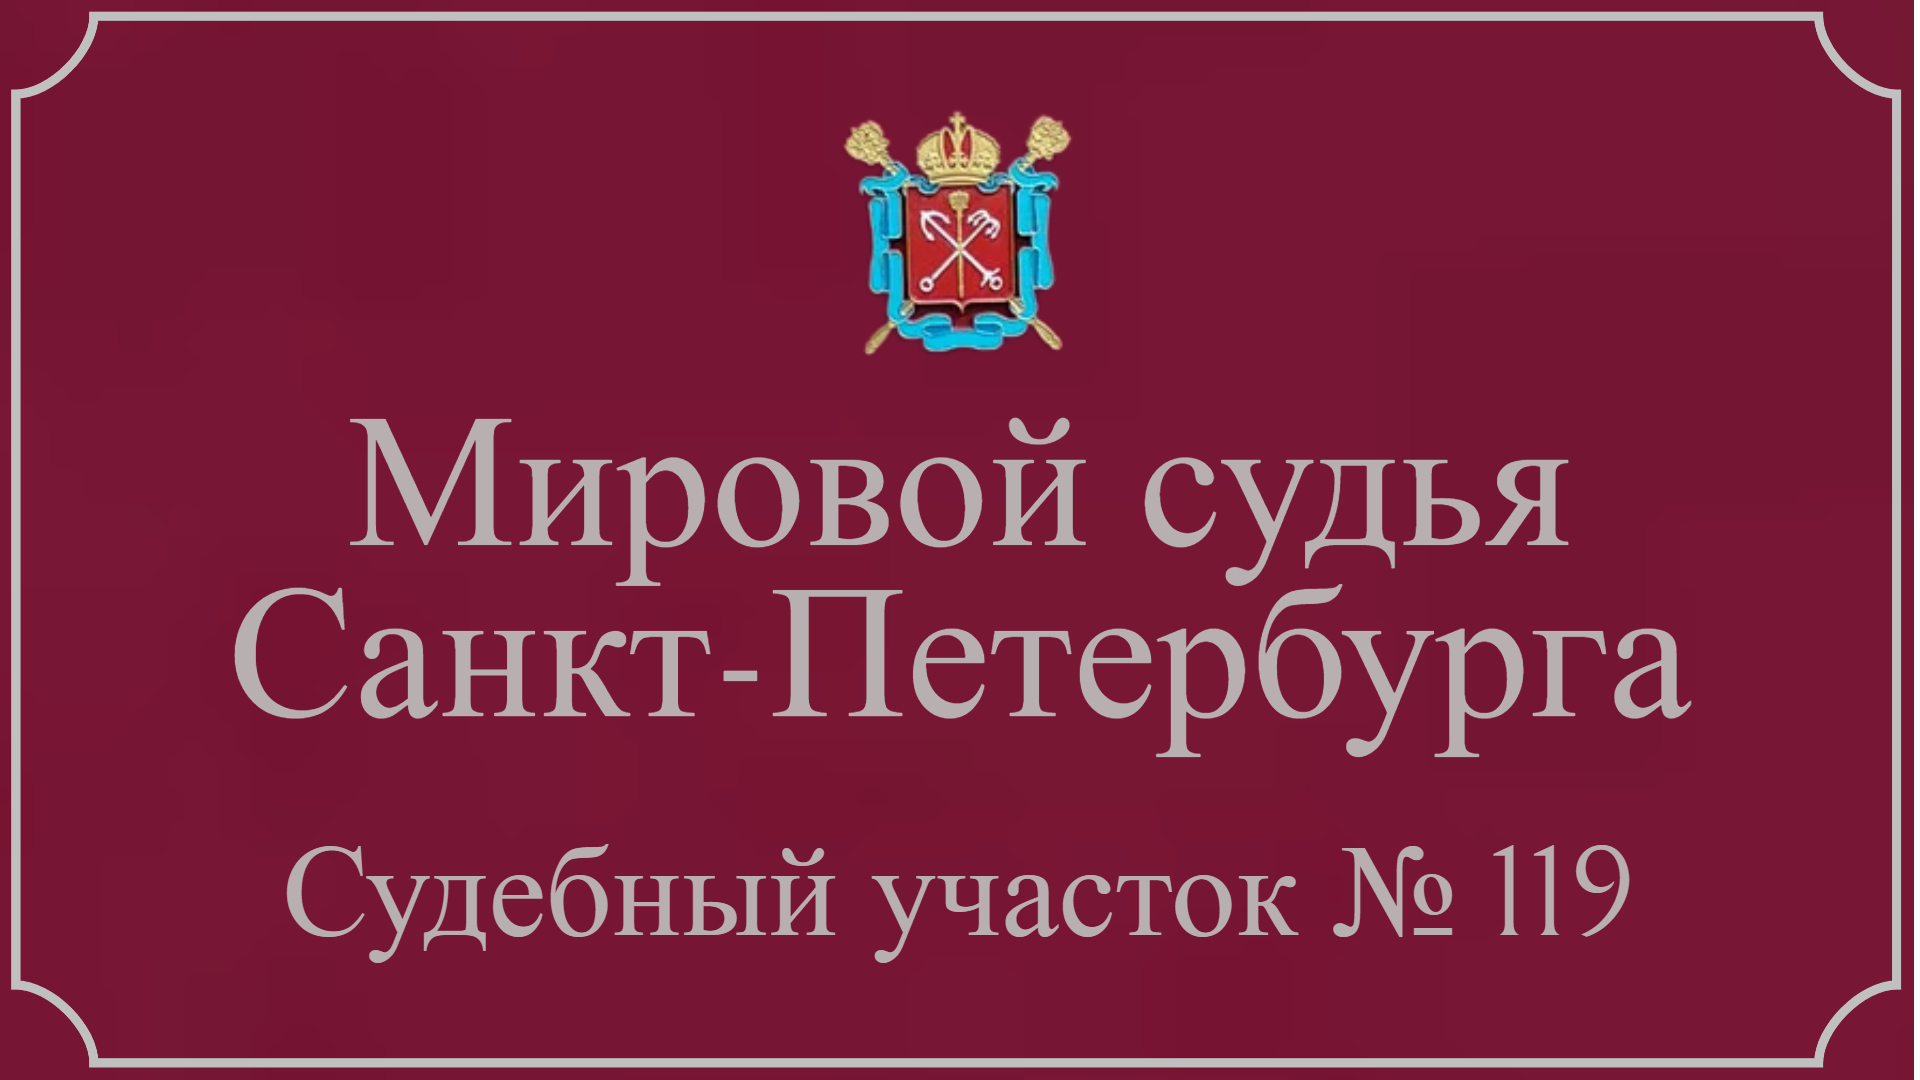 Информация по 119 судебному участку в Санкт-Петербурге.